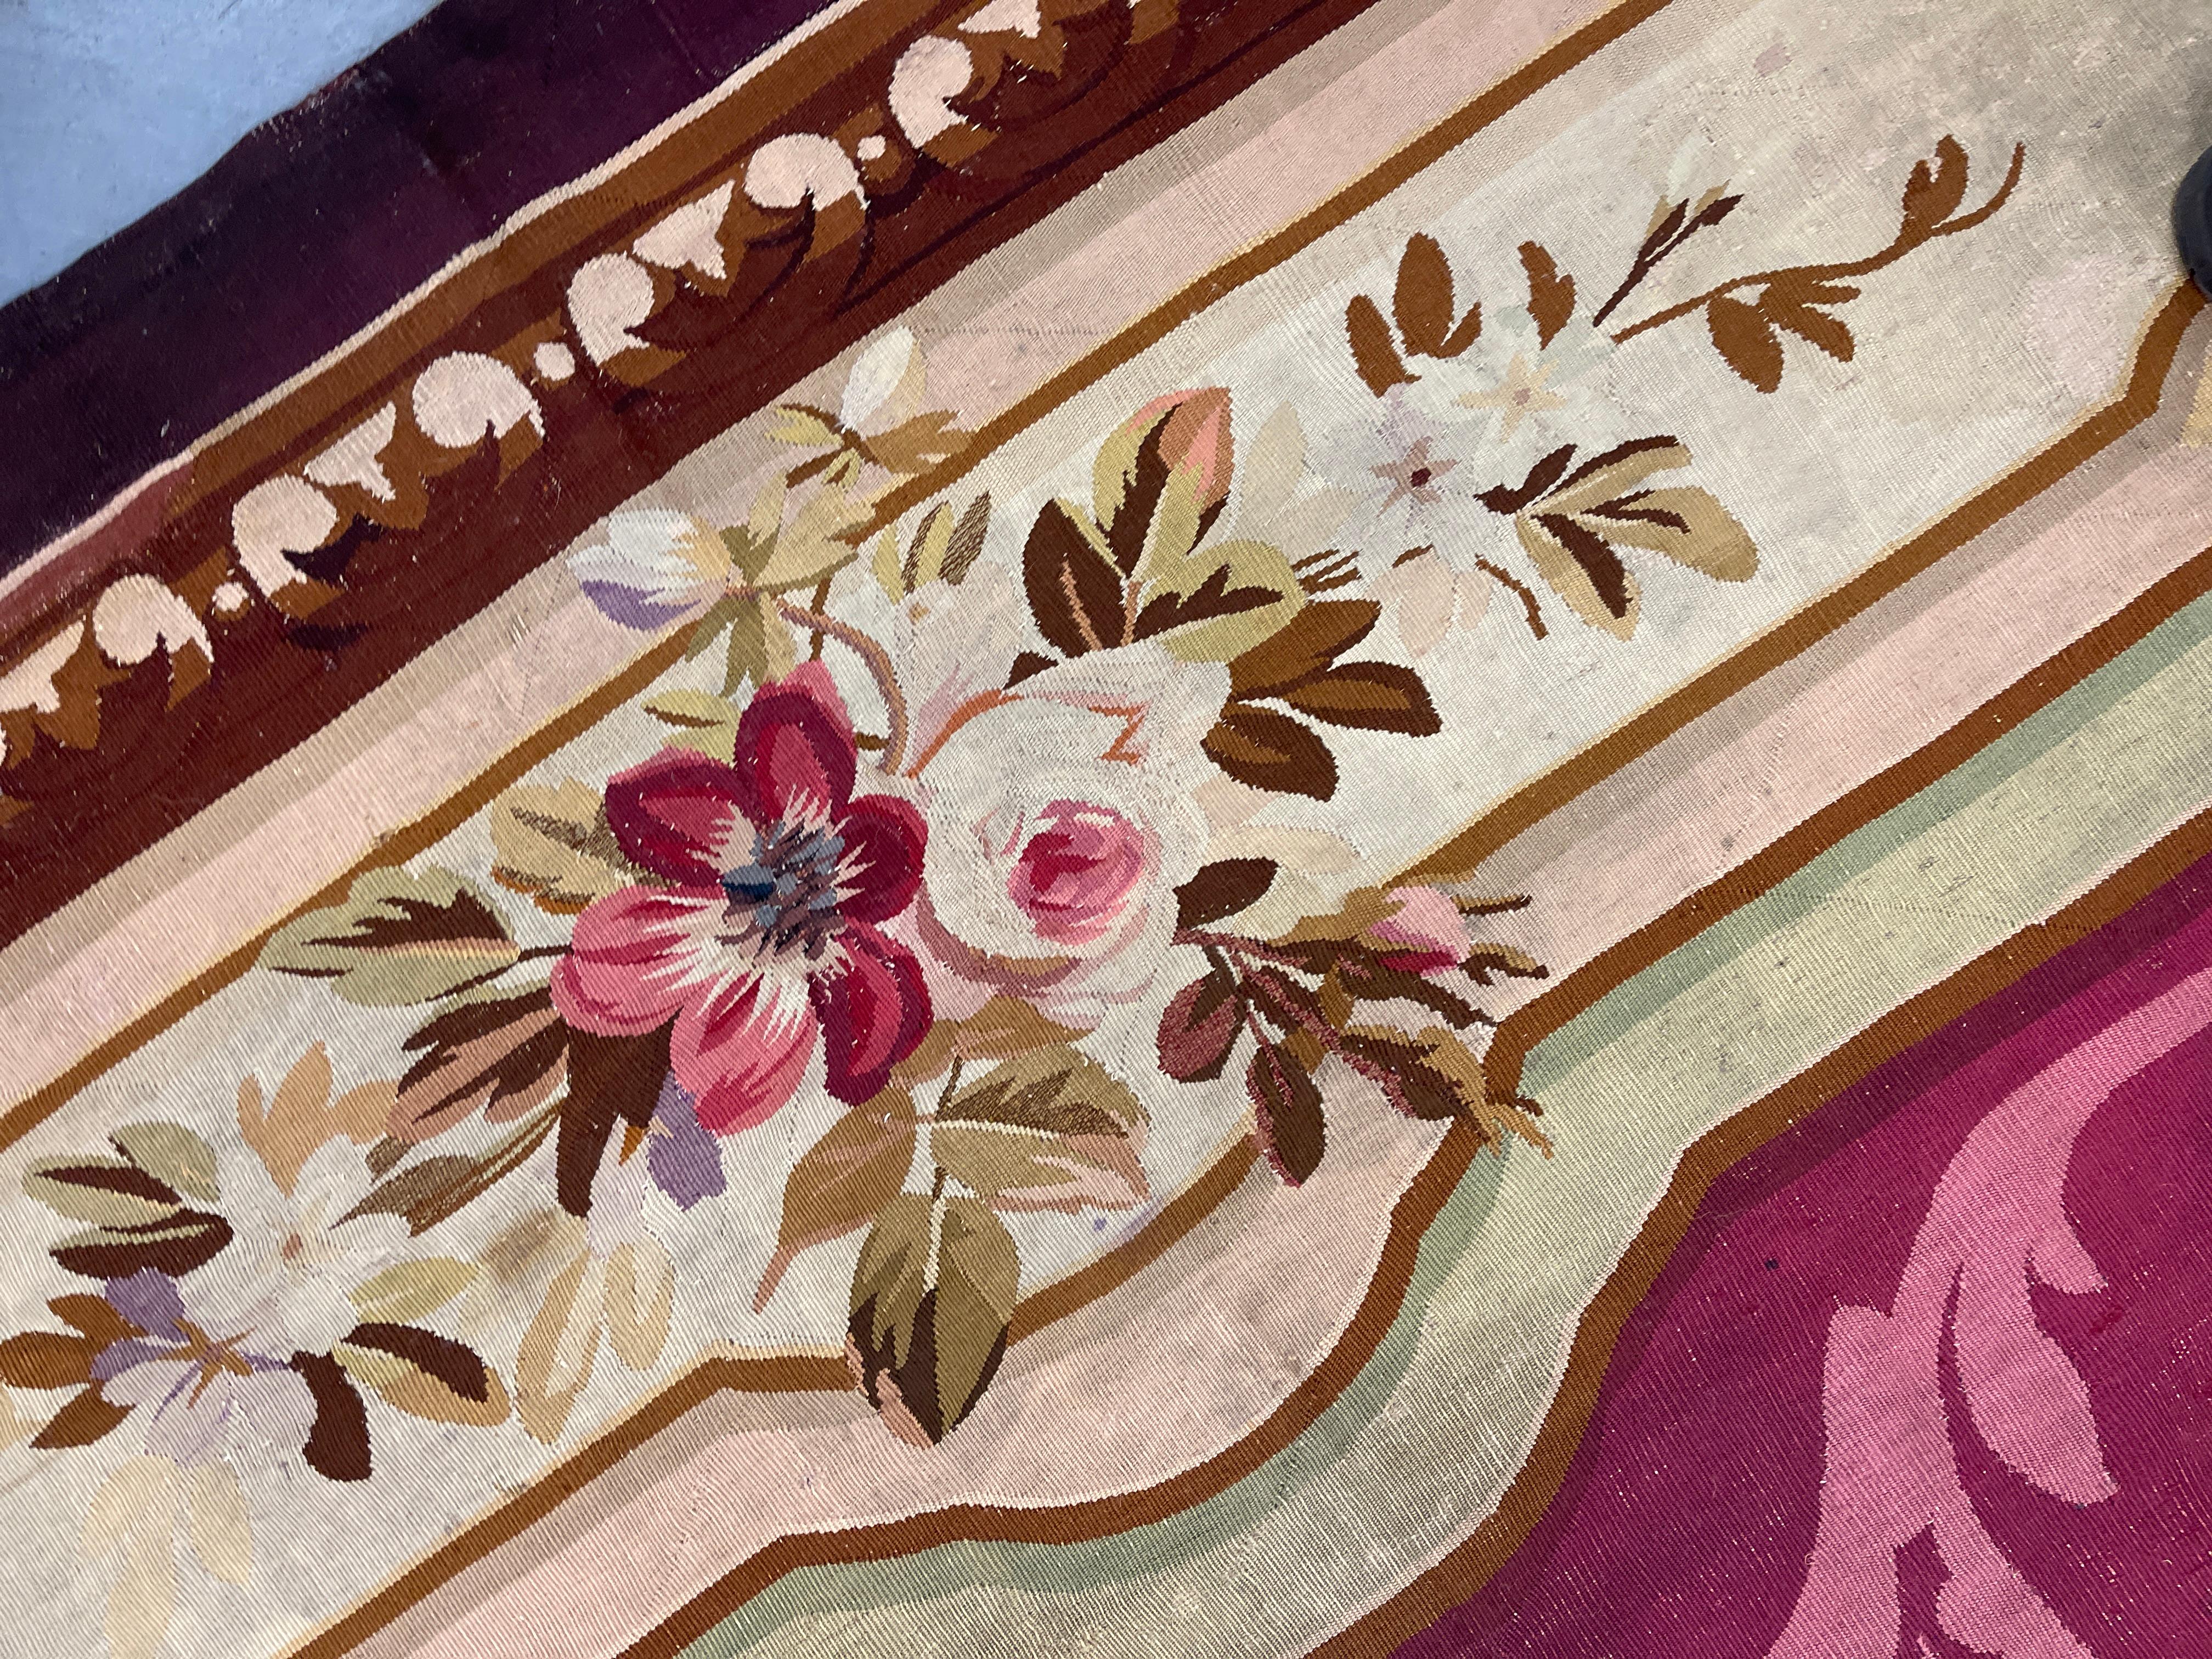 Mit aufwendig gewebten Motiven und Emblemen auf einer Mischung aus burgundbeigefarbenen Hintergründen in der Mitte. Der handgefertigte Teppich wird dann von einer sehr detaillierten, geschichteten Bordüre umschlossen.
Dieser hochwertige, seltene